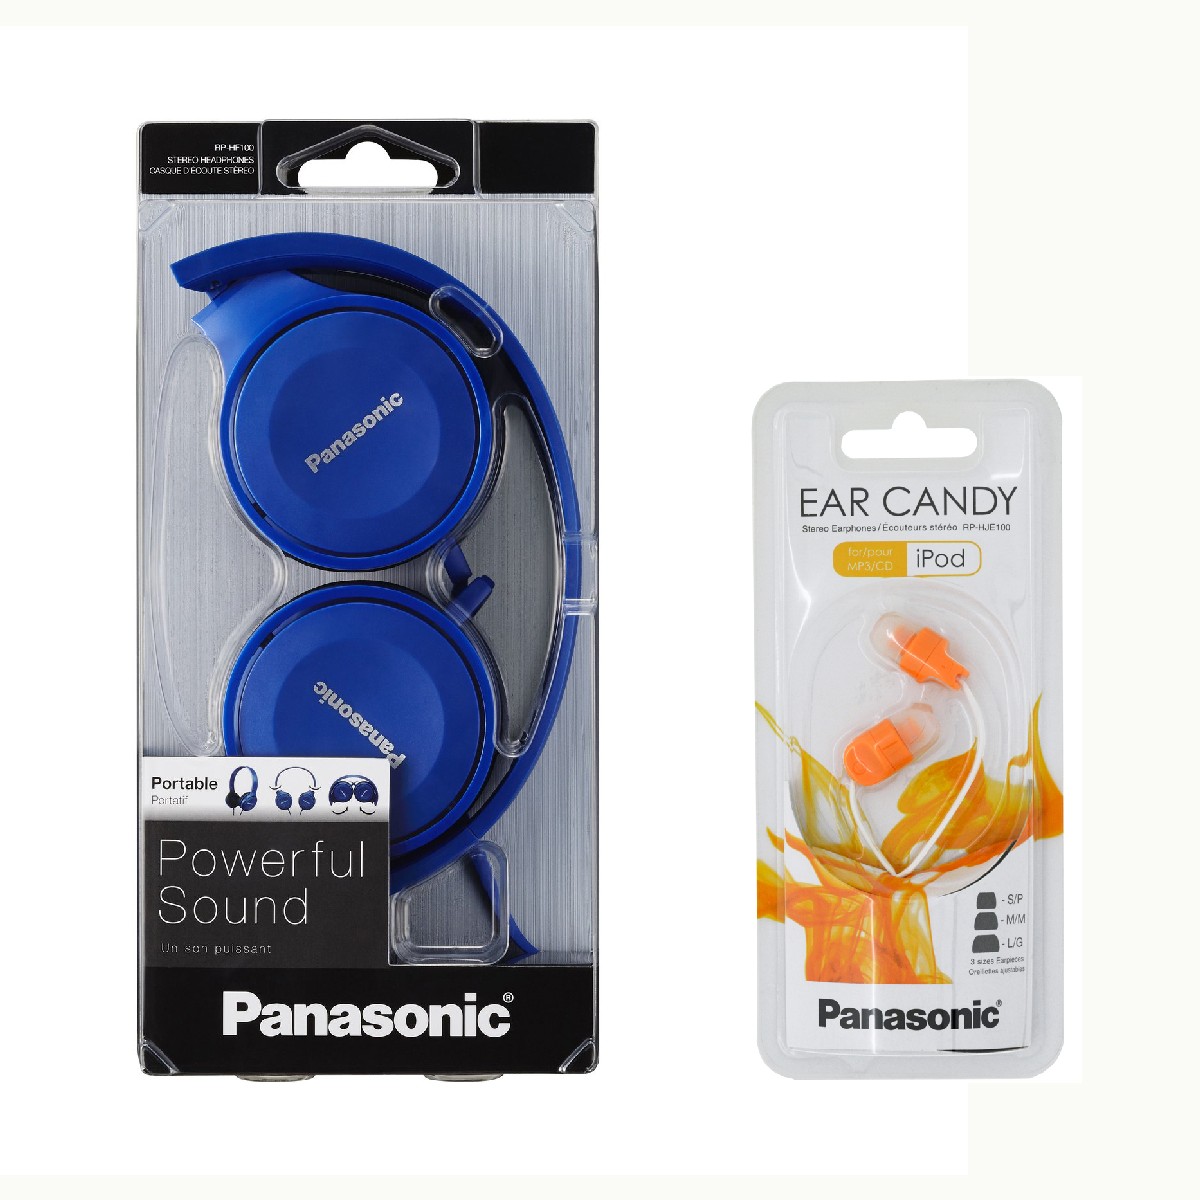 Ακουστικά Panasonic RP-HF100E-A 3.5mm Αναδίπλωσης Μπλε + Δώρο Ακουστικά Panasonic In-ear RP-HJΕ100E-D 3.5mm Πορτοκαλί Χωρίς Μικρόφωνο